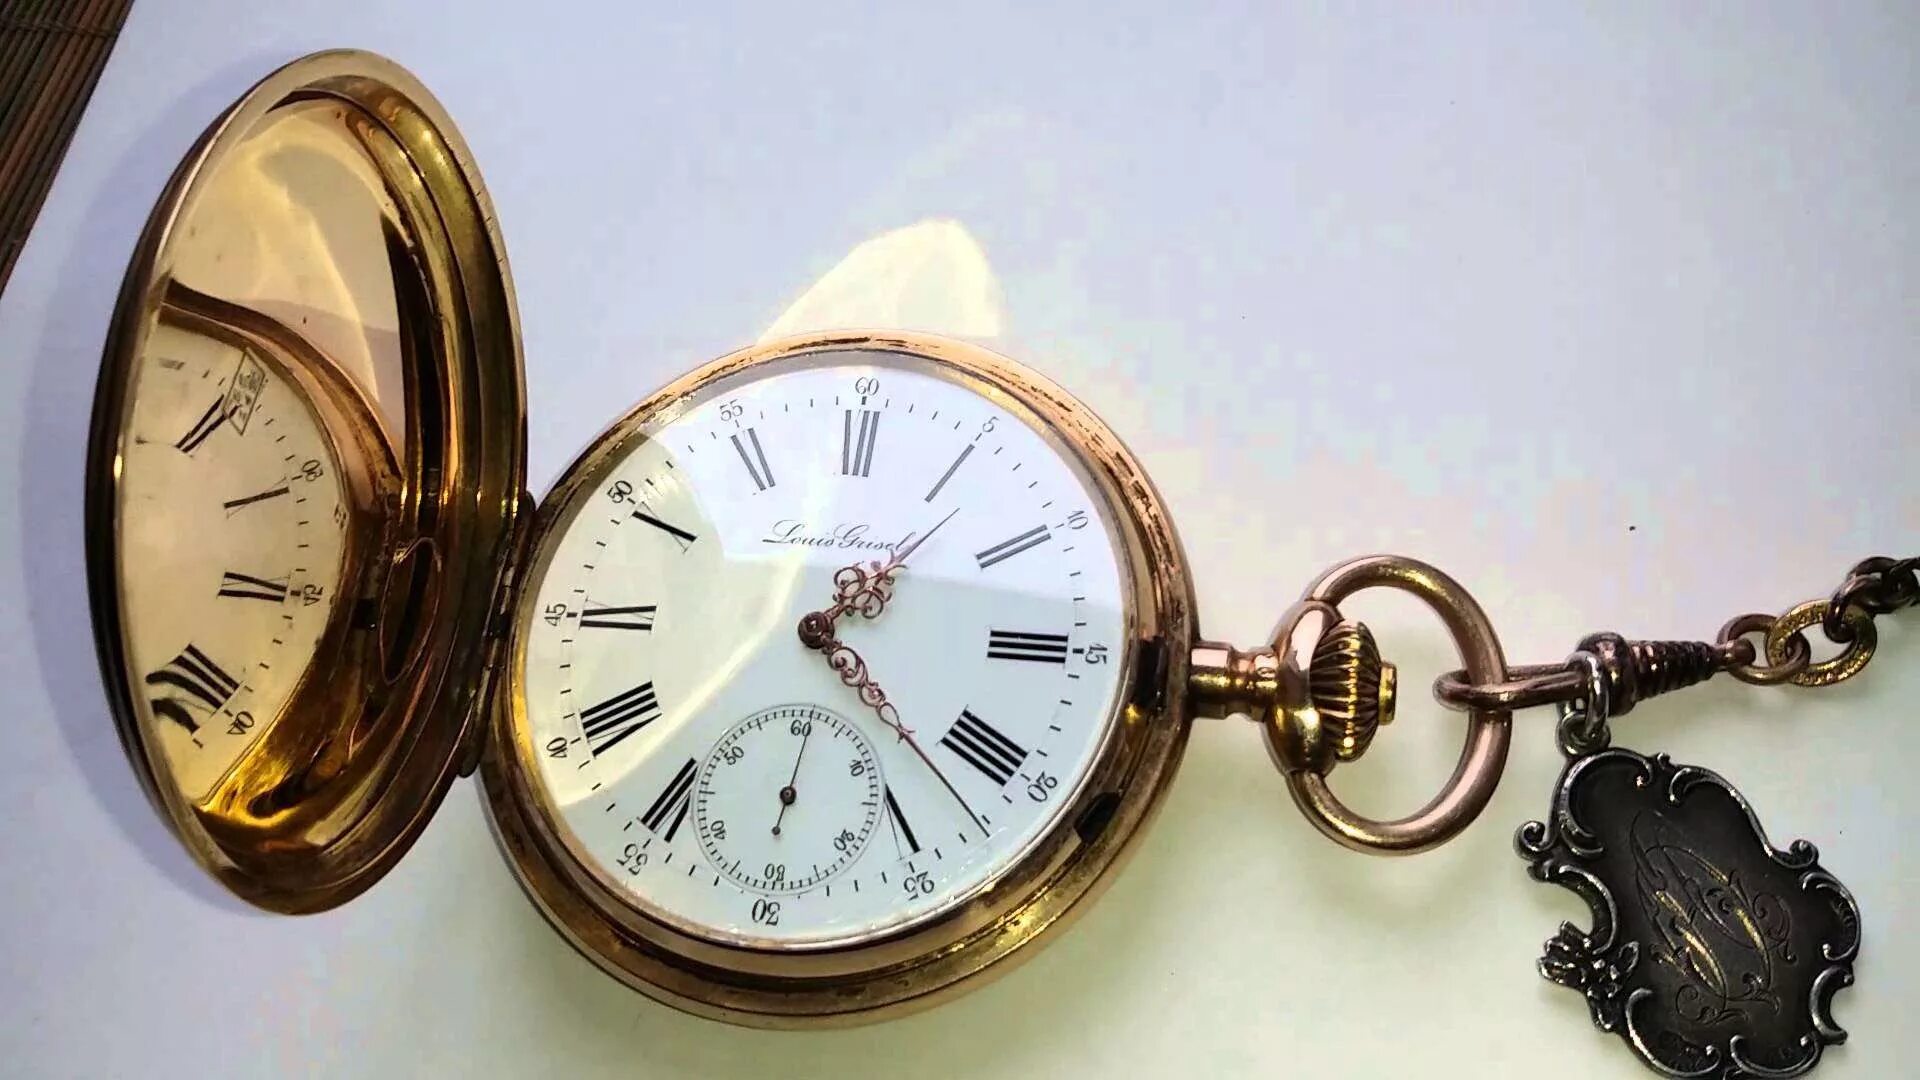 Антикварные часы. Золотые часы. Комиссионный магазин часов. Антикварные часы Санкт-Петербурга. Ломбарды спб часы